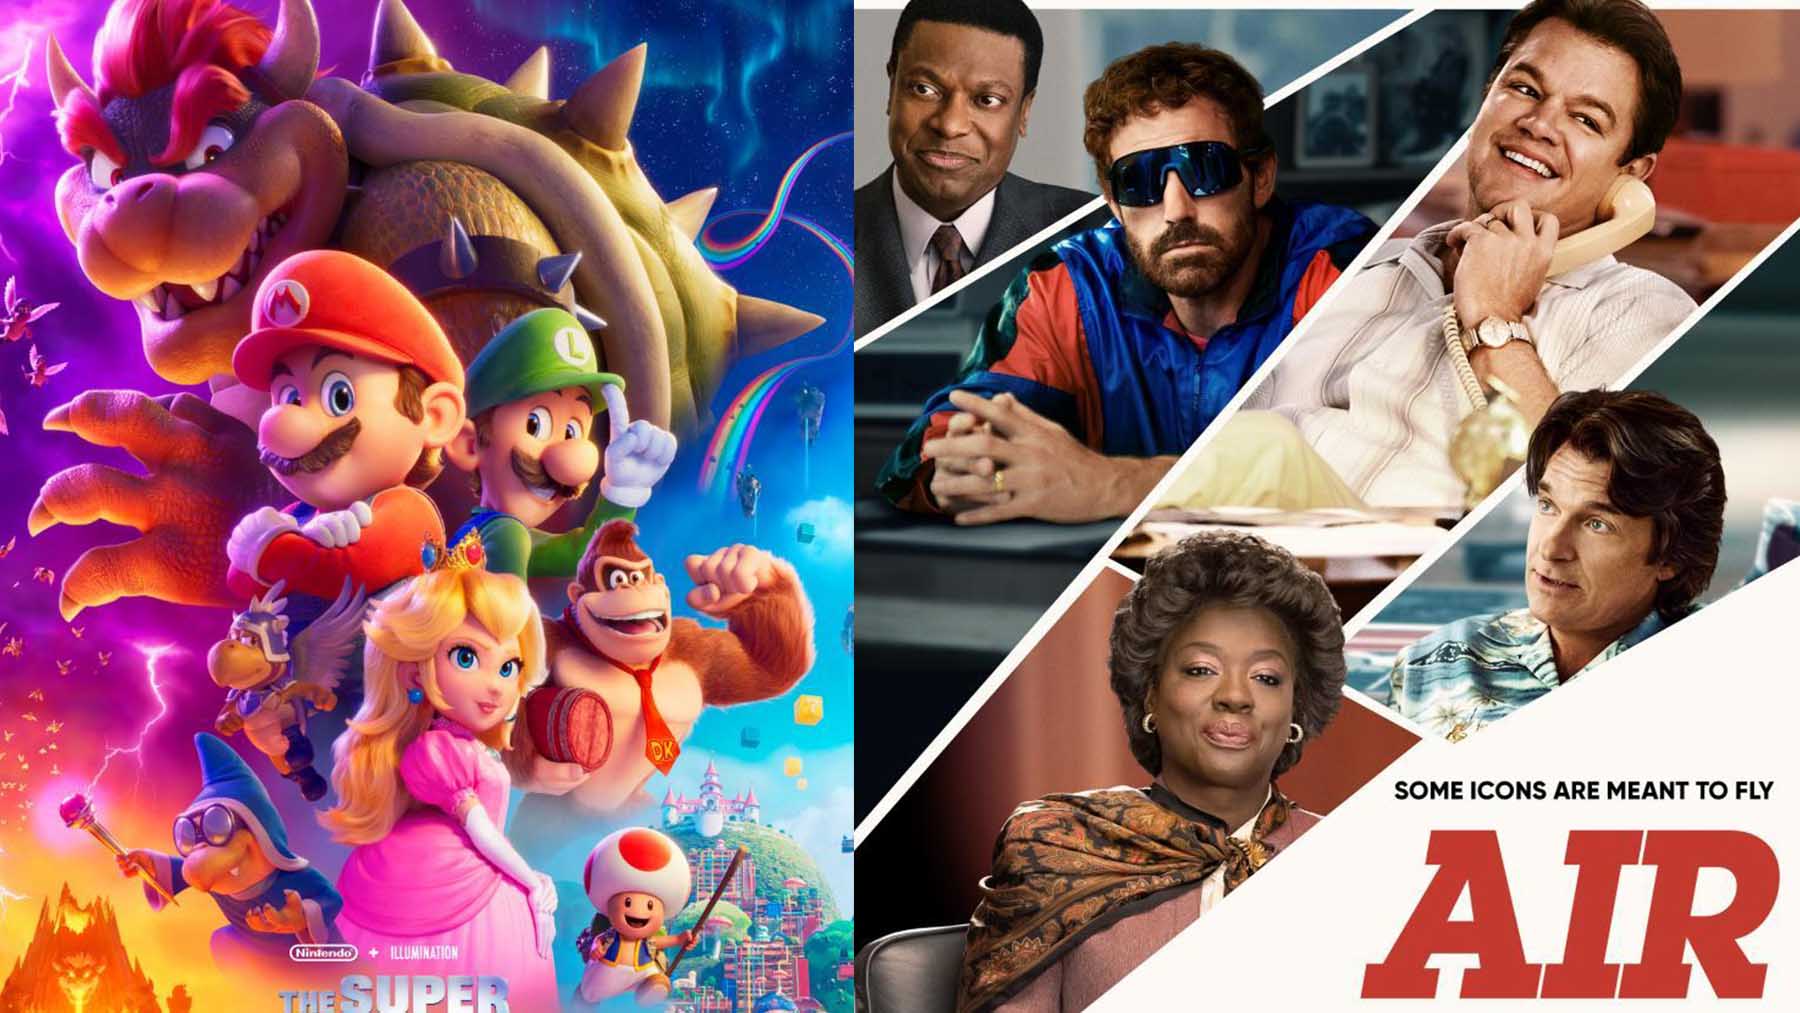 Ya en cines: Super Mario Bros y lo nuevo de Ben Affleck llegan a las salas